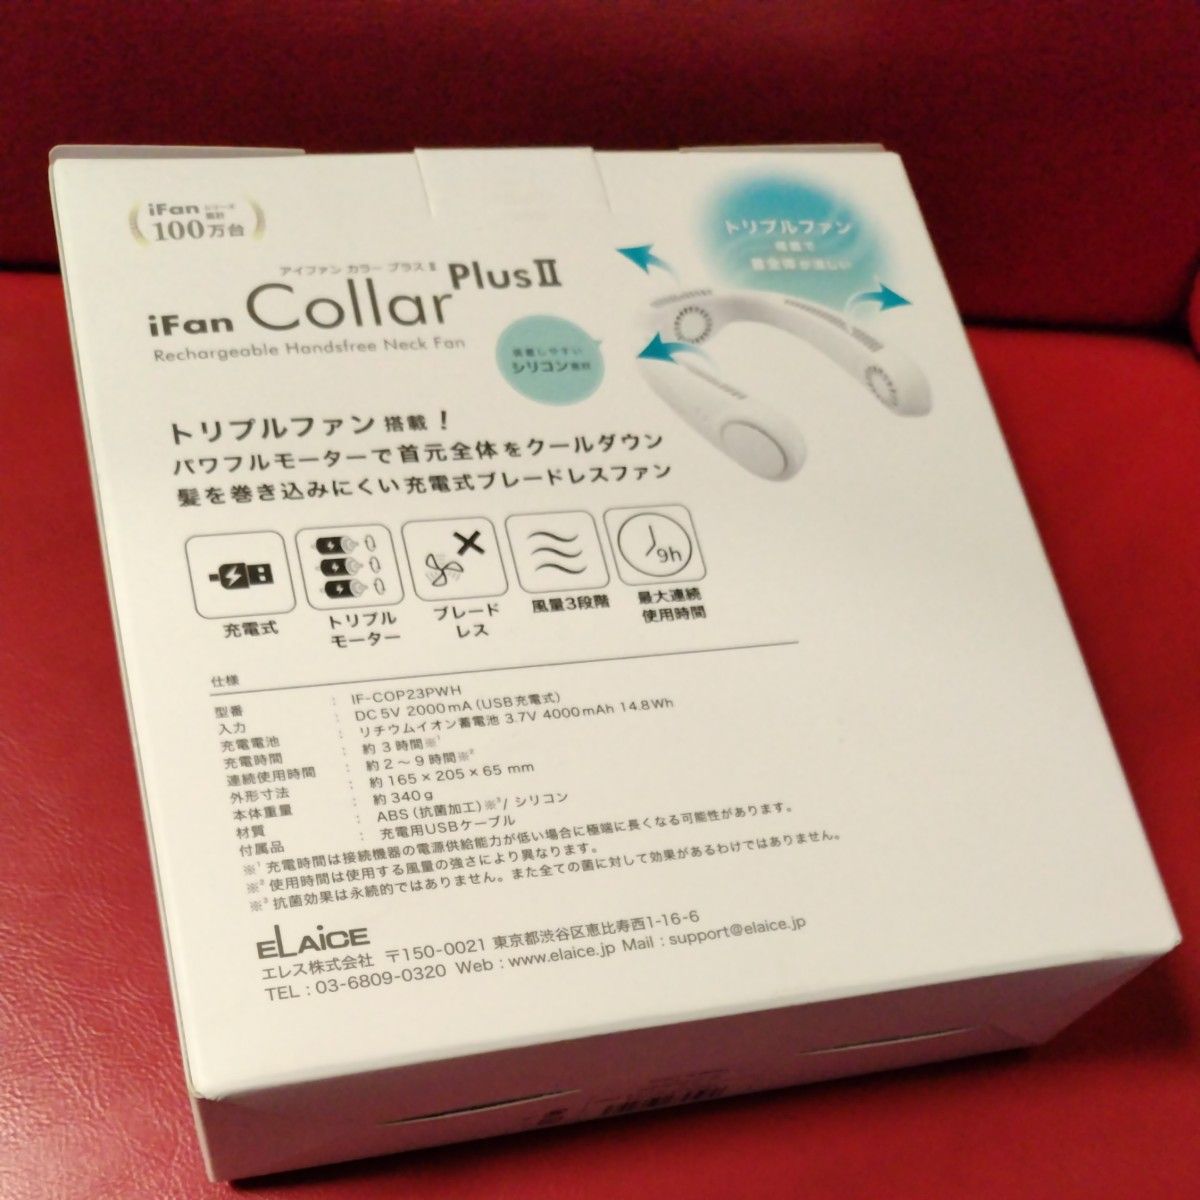 新品未使用 エレス iFan　CollarPlusII アイファン カラープラスII 充電式 ネックファン IF-COP23PWH